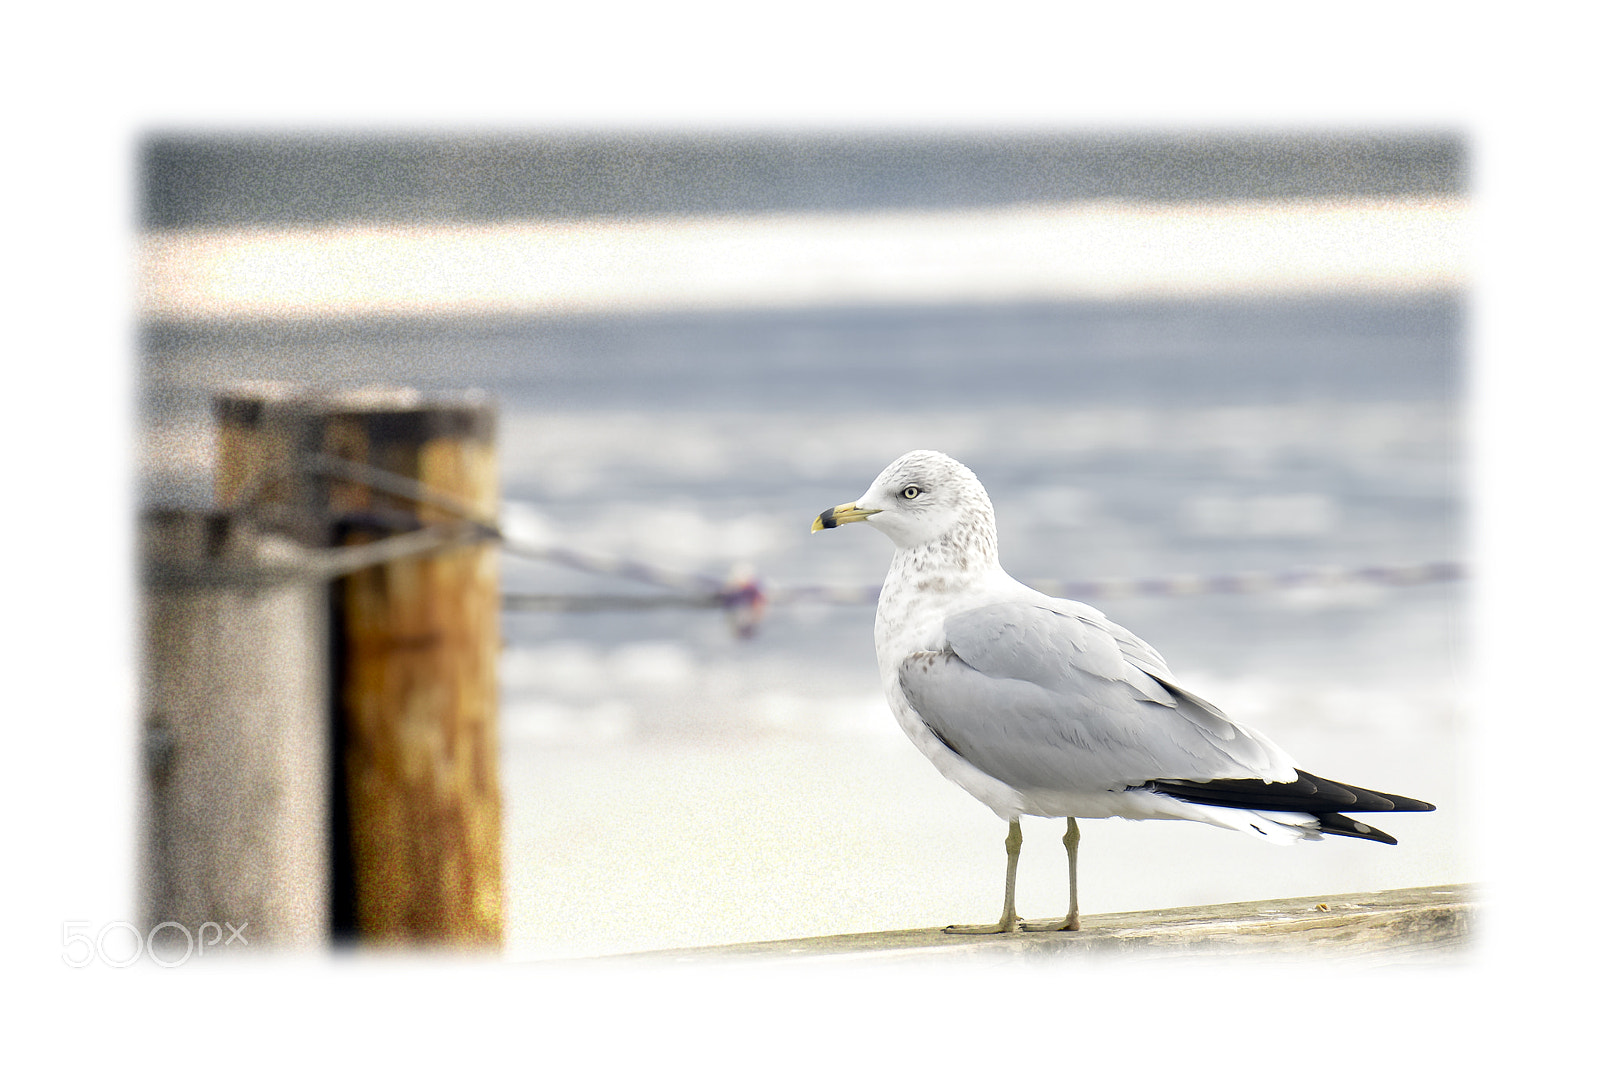 Nikon D800 sample photo. Newburgh seagulls photography